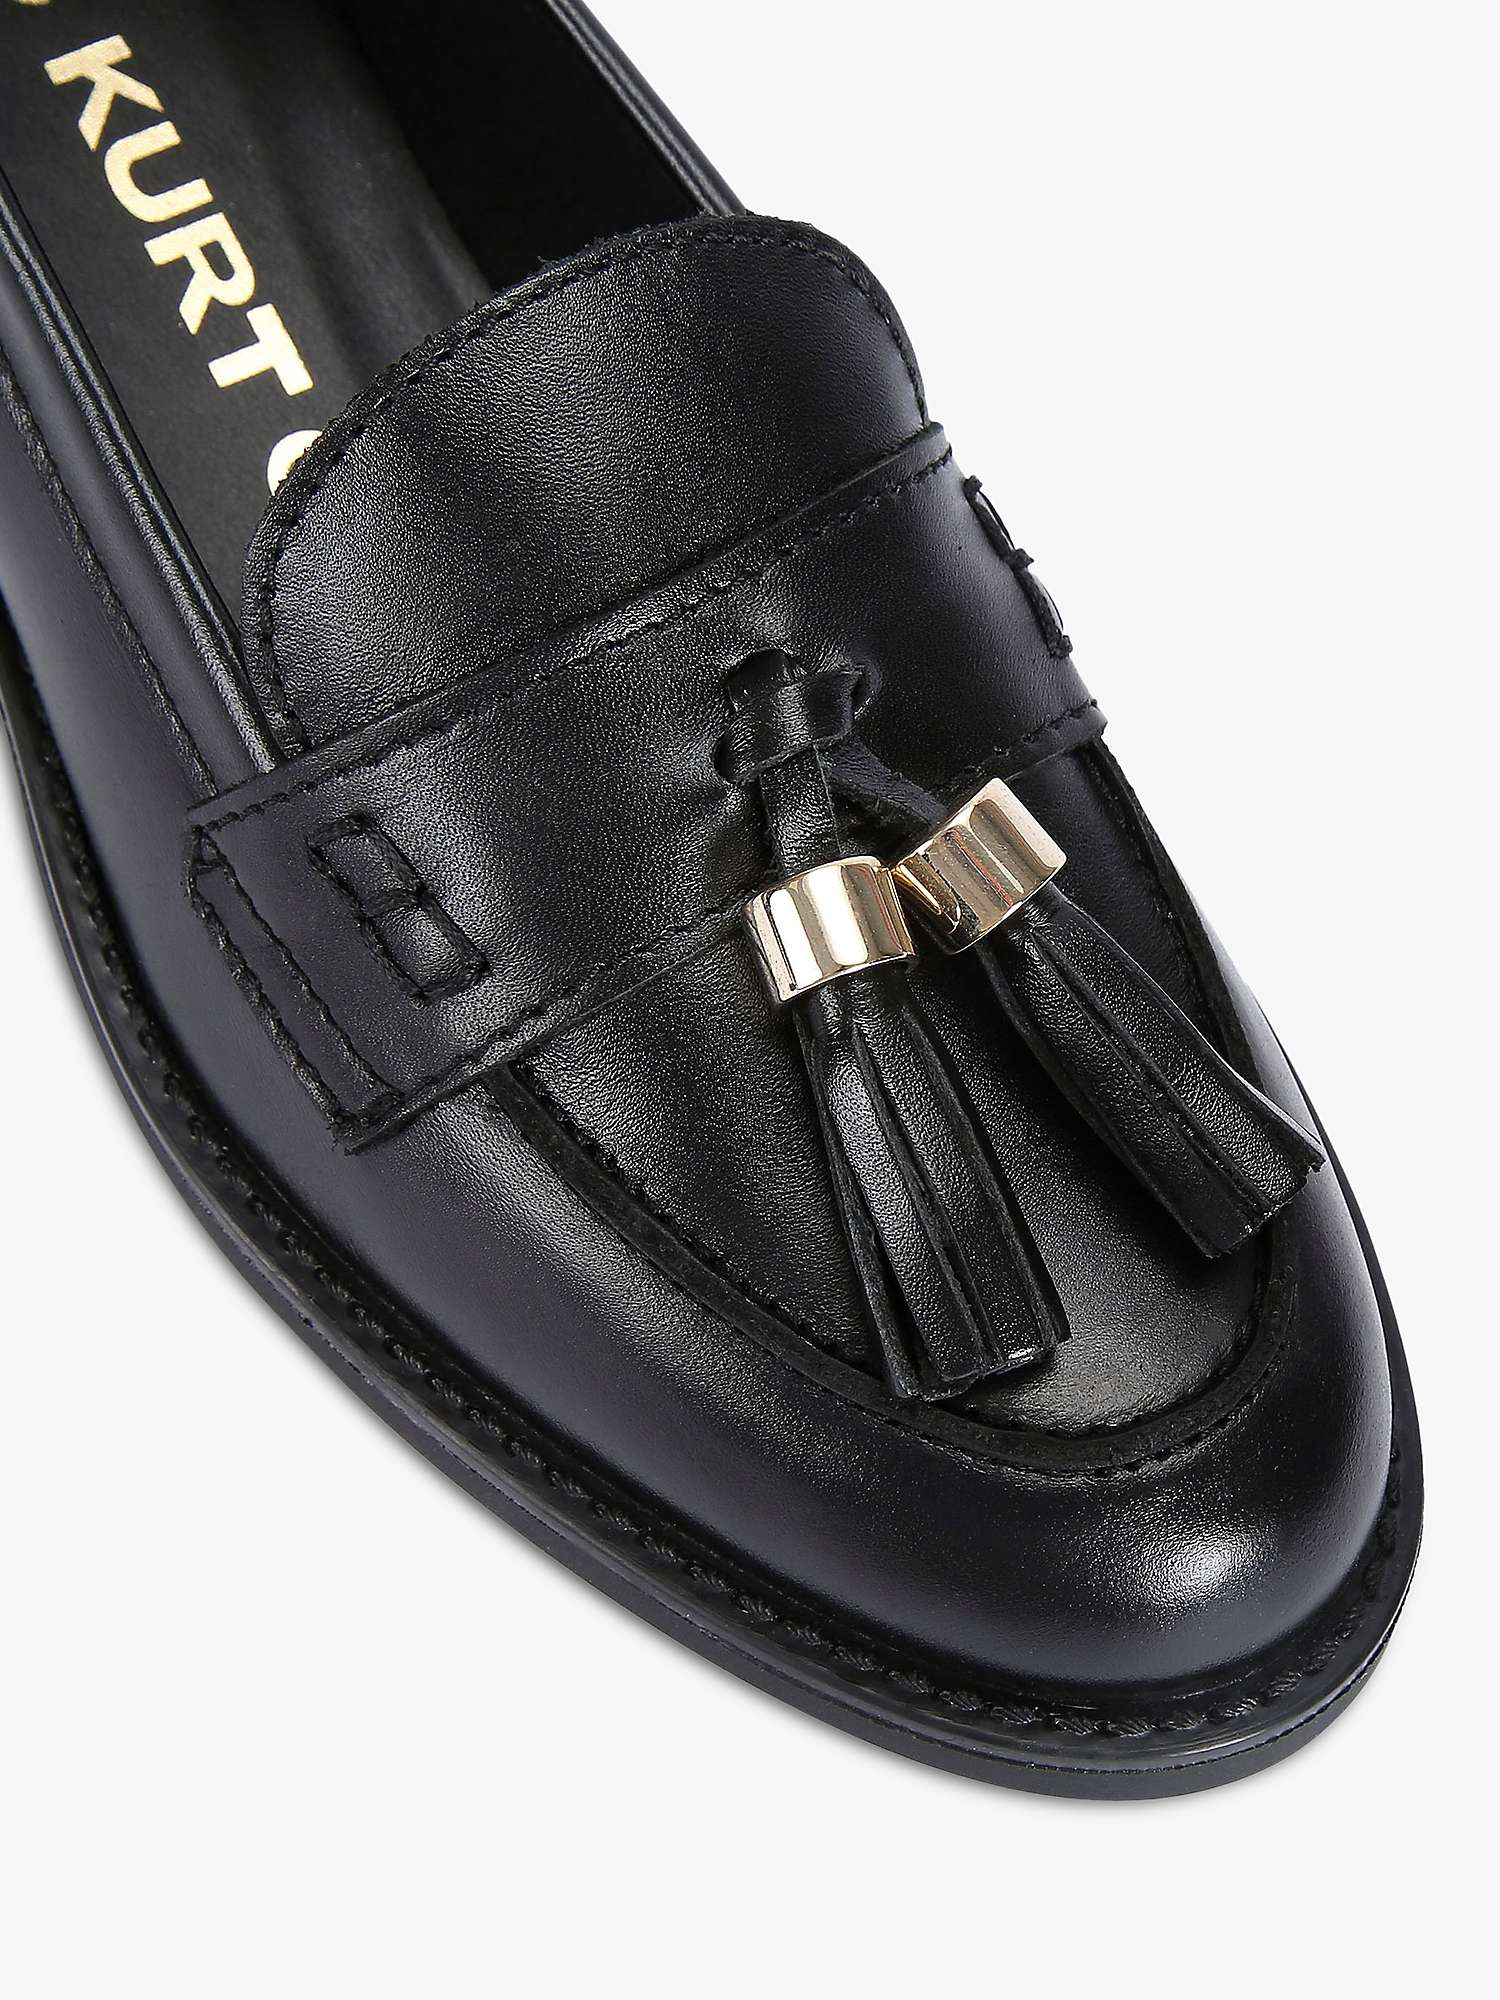 KG Kurt Geiger Mia Leather Tassle Loafers, Black at John Lewis & Partners